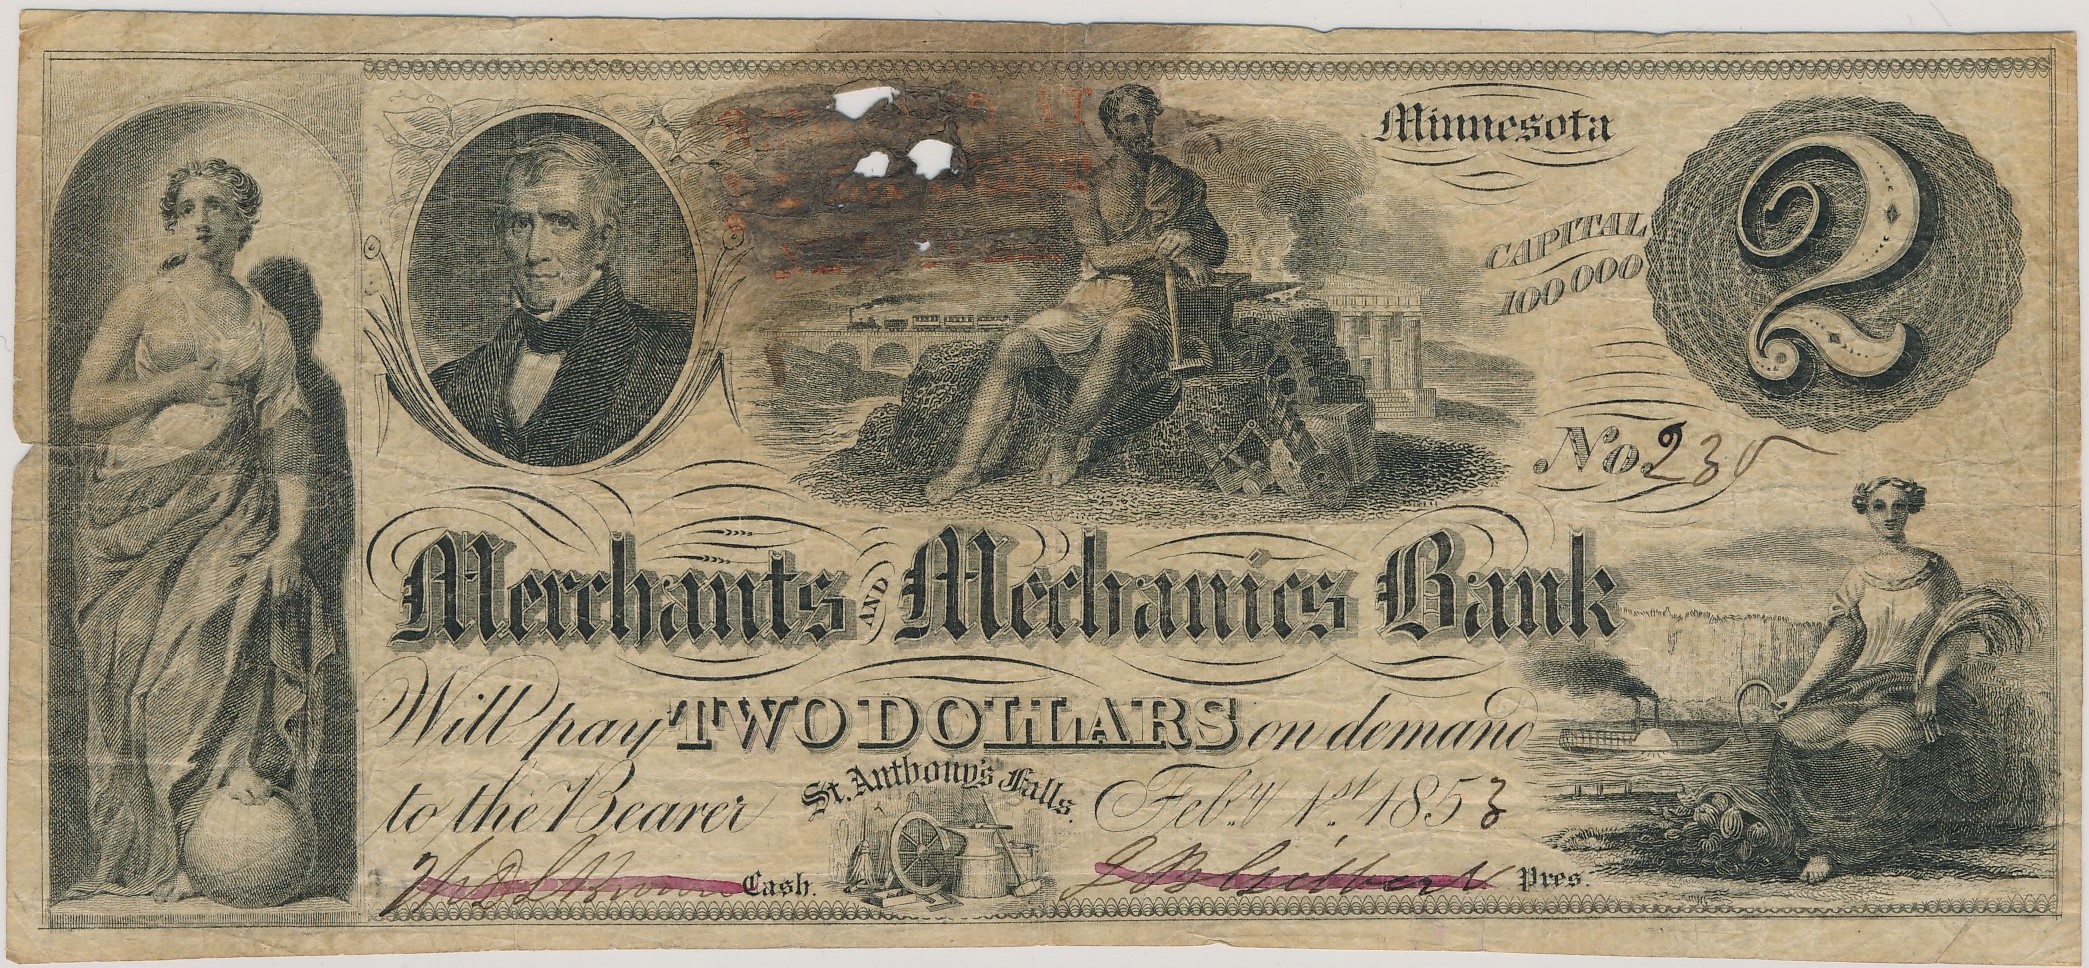 $2 Merchants and Mechanics Bank